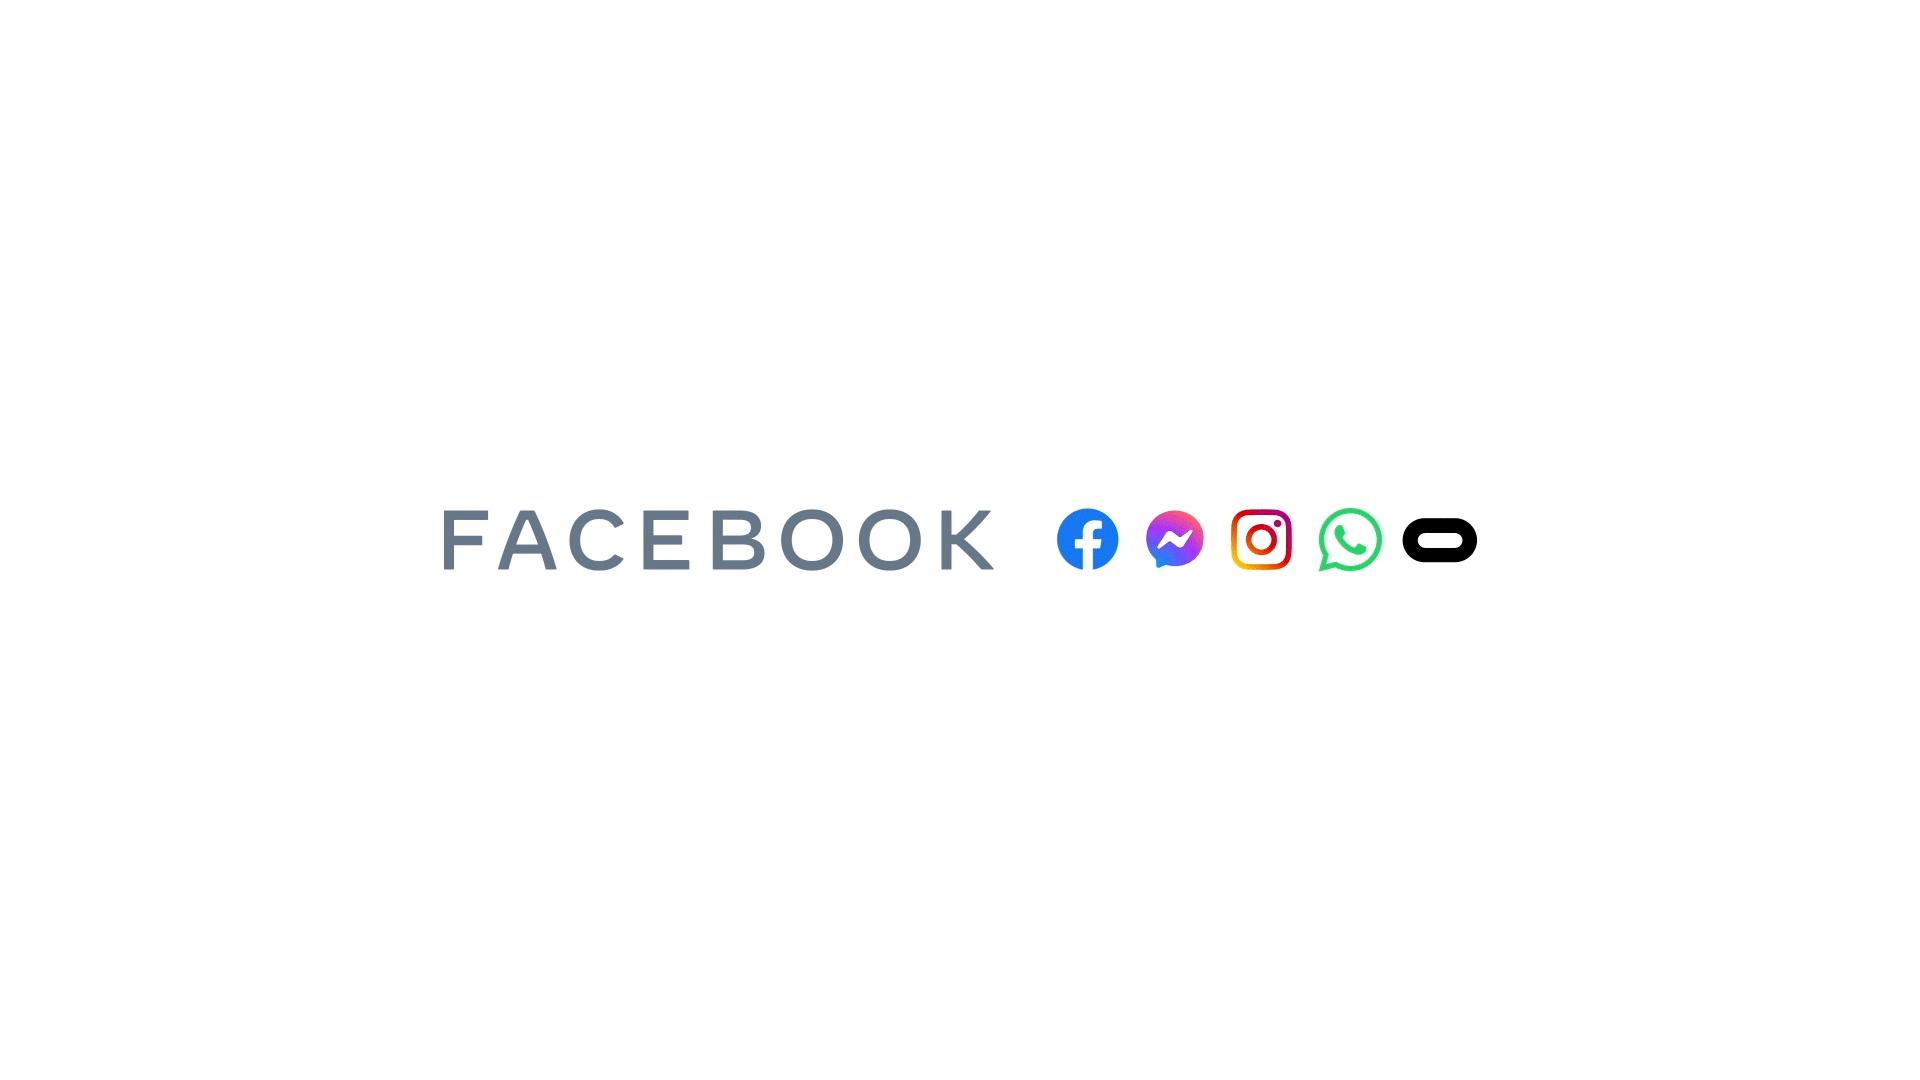 Spoločnosť Facebook sa premenuje na Meta [Meta]